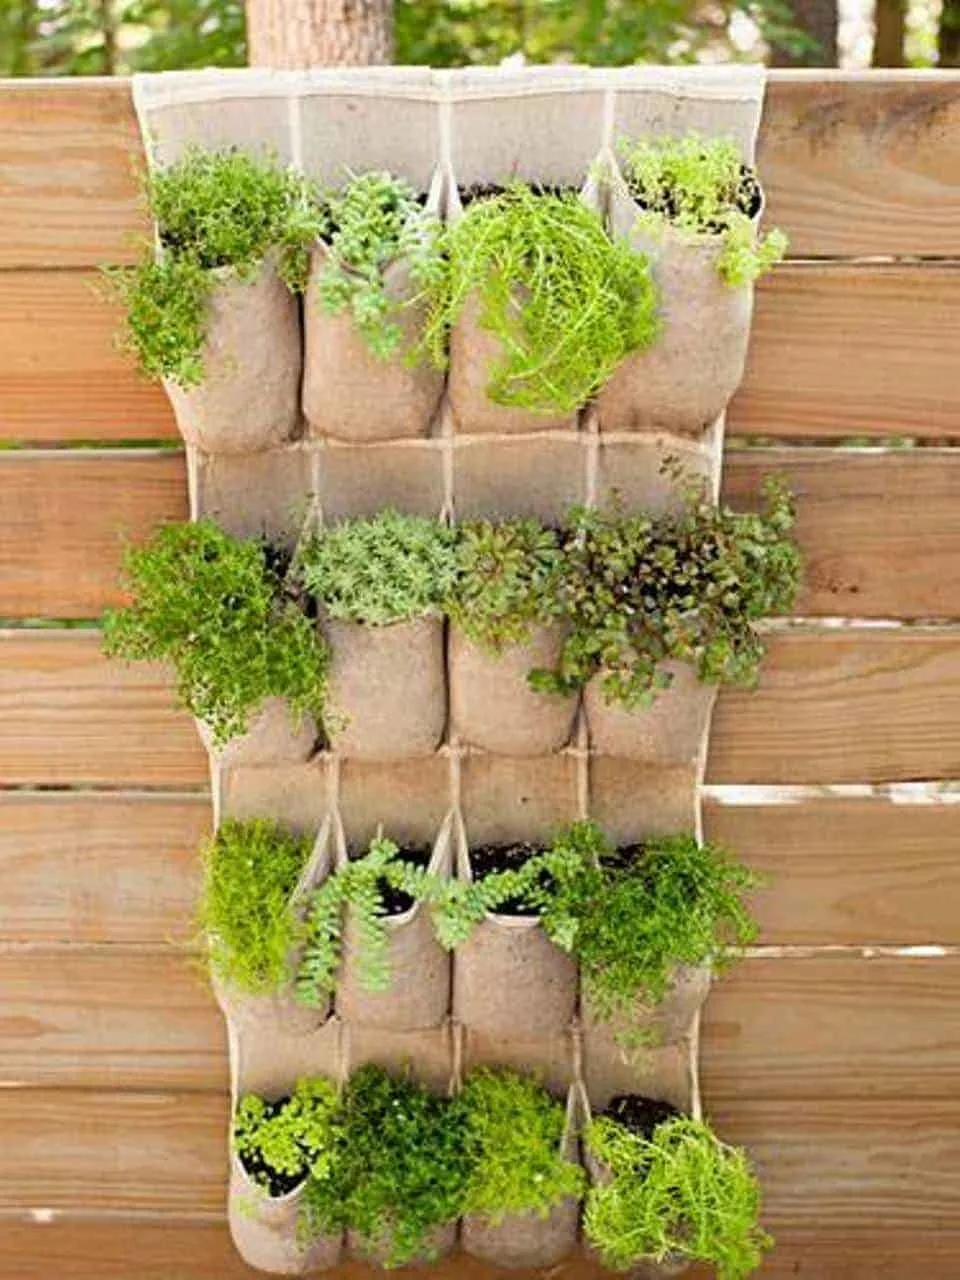 Plants in Pockets - Smart Small Garden Ideas